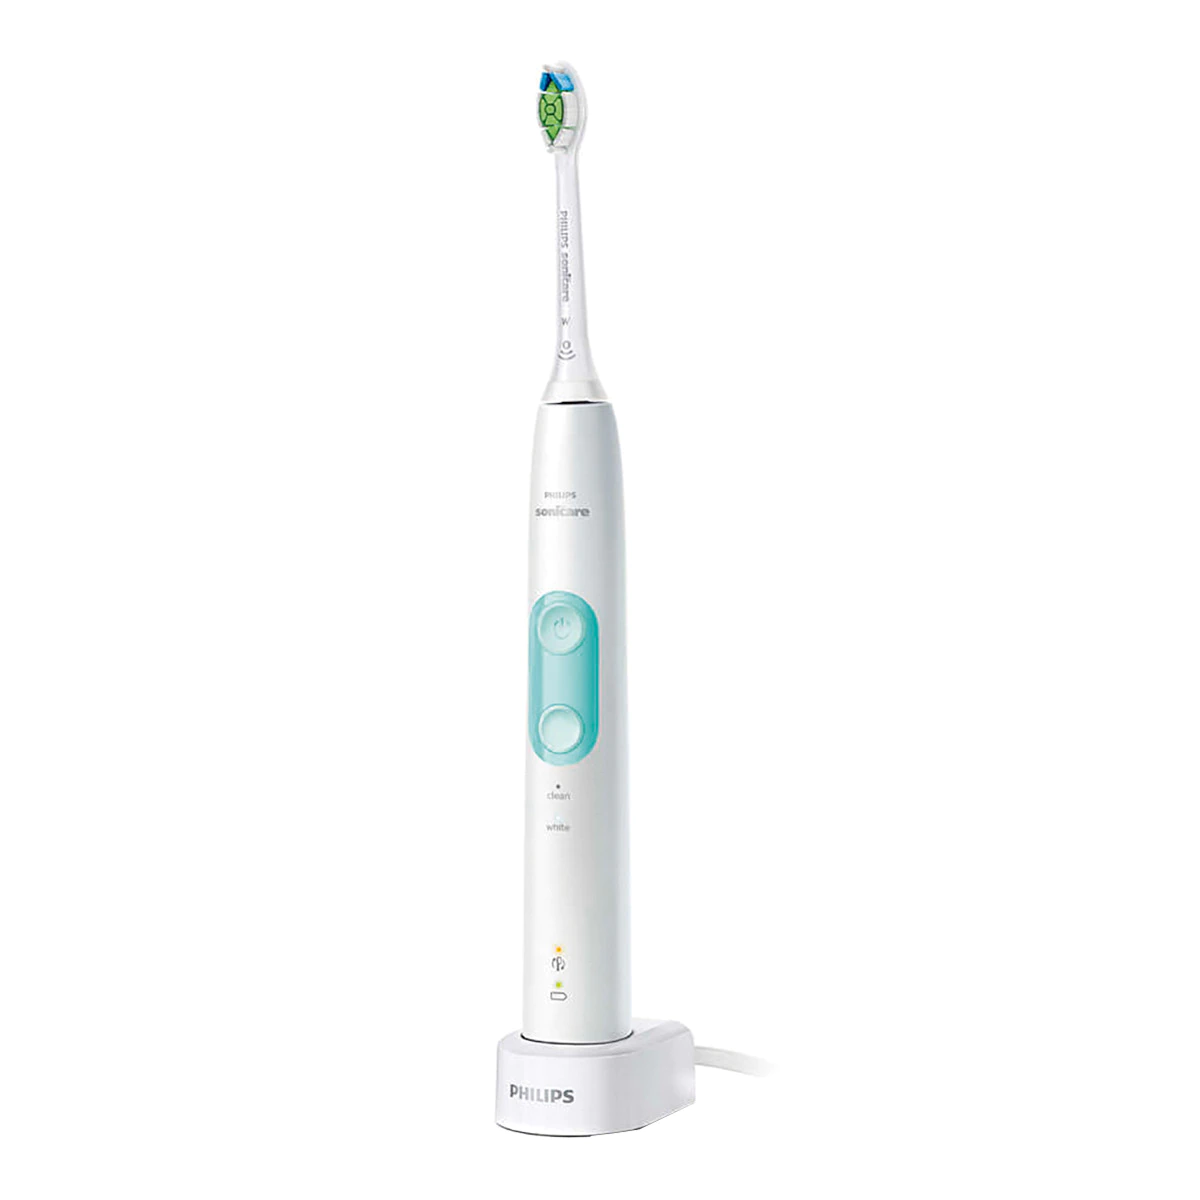 Cepillo de dientes eléctrico Philips Sonicare ProtectiveClean con 2 modos de limpieza